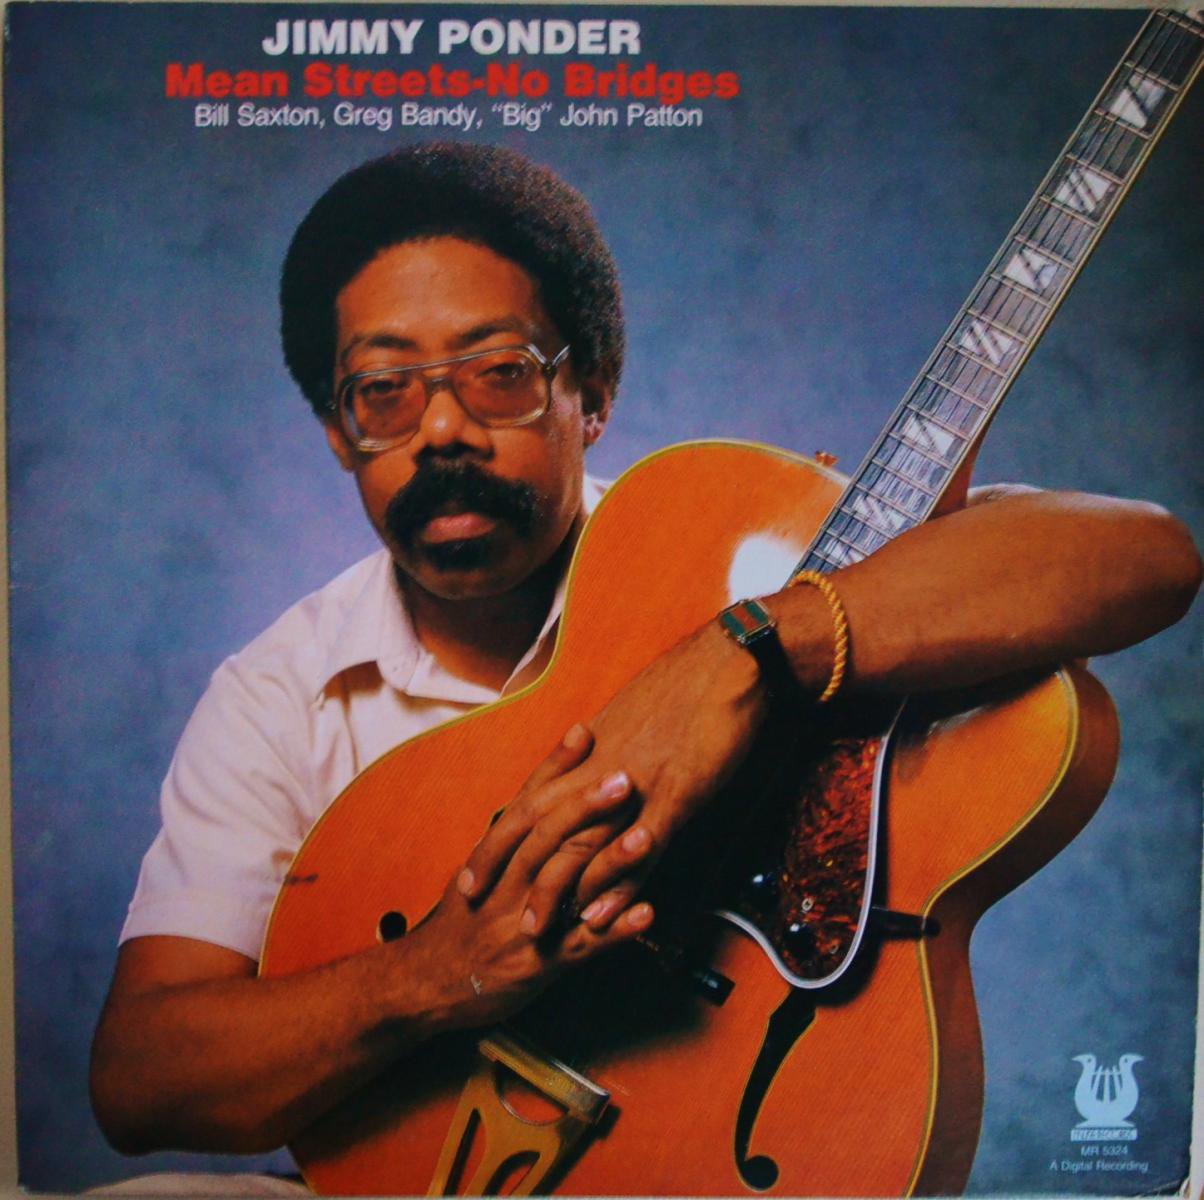 JIMMY PONDER / MEAN STREETS - NO BRIDGES (LP)